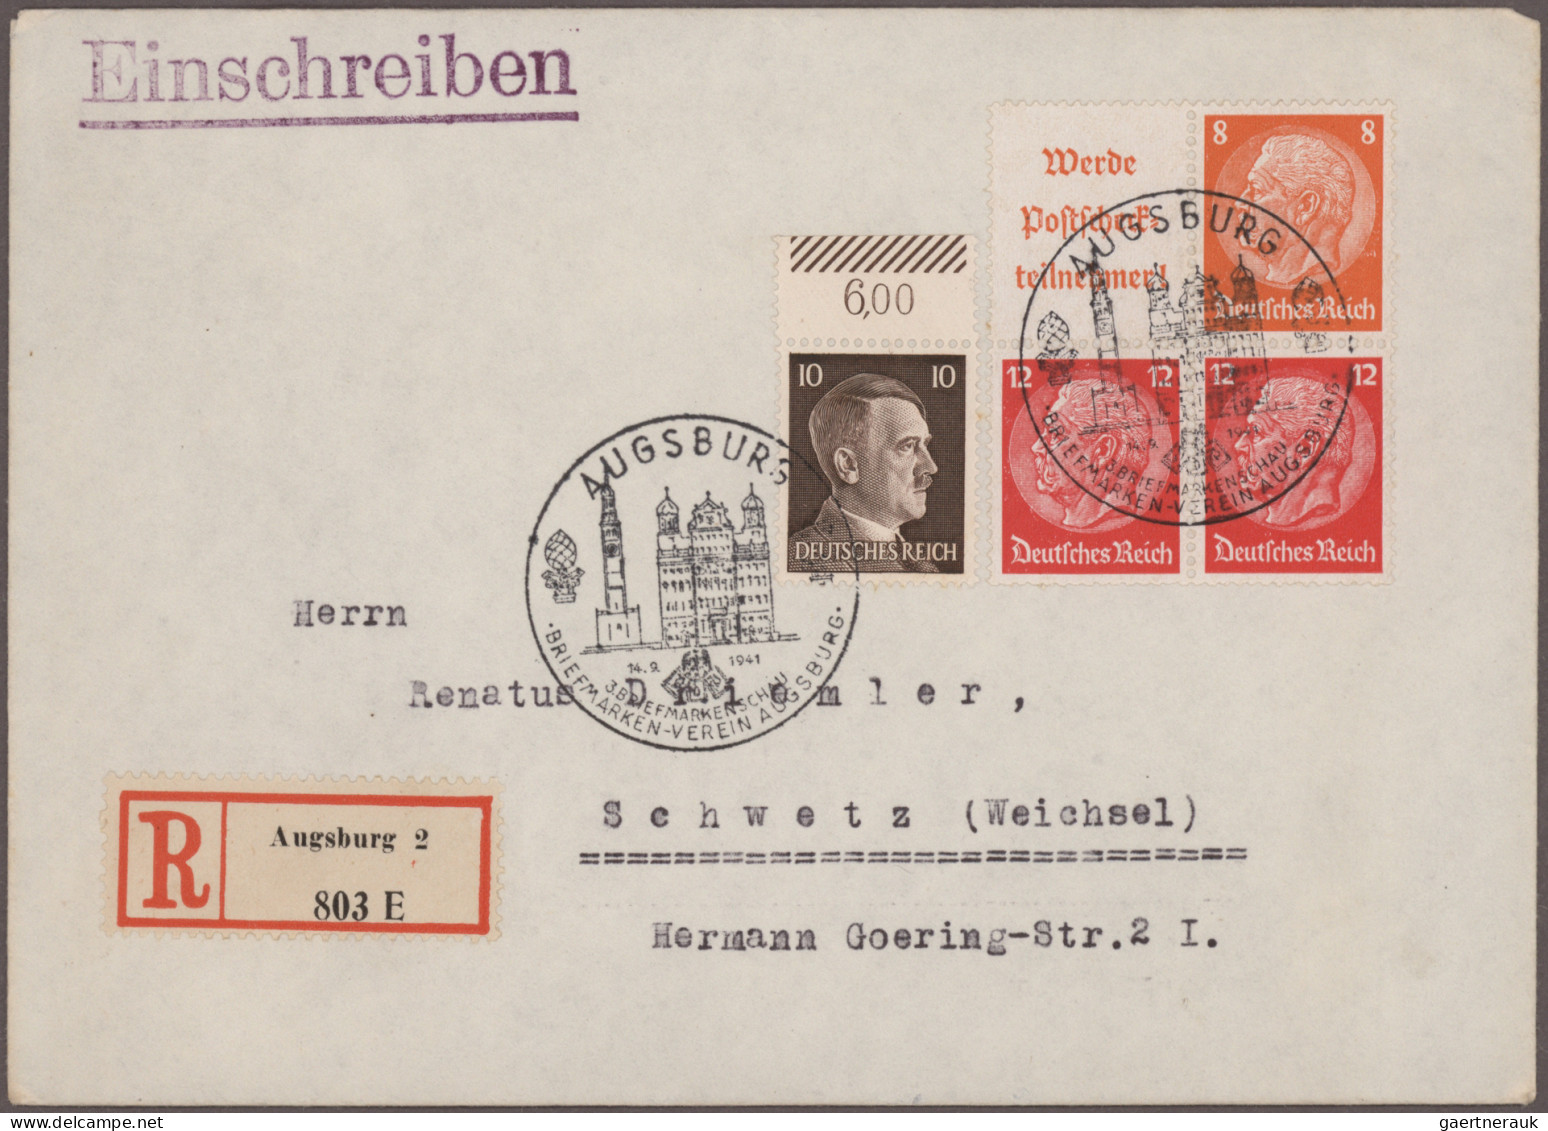 Nachlässe: Uriger Alt-Posten Briefe und Karten mit nur Dt.Reich und auch Bayern,